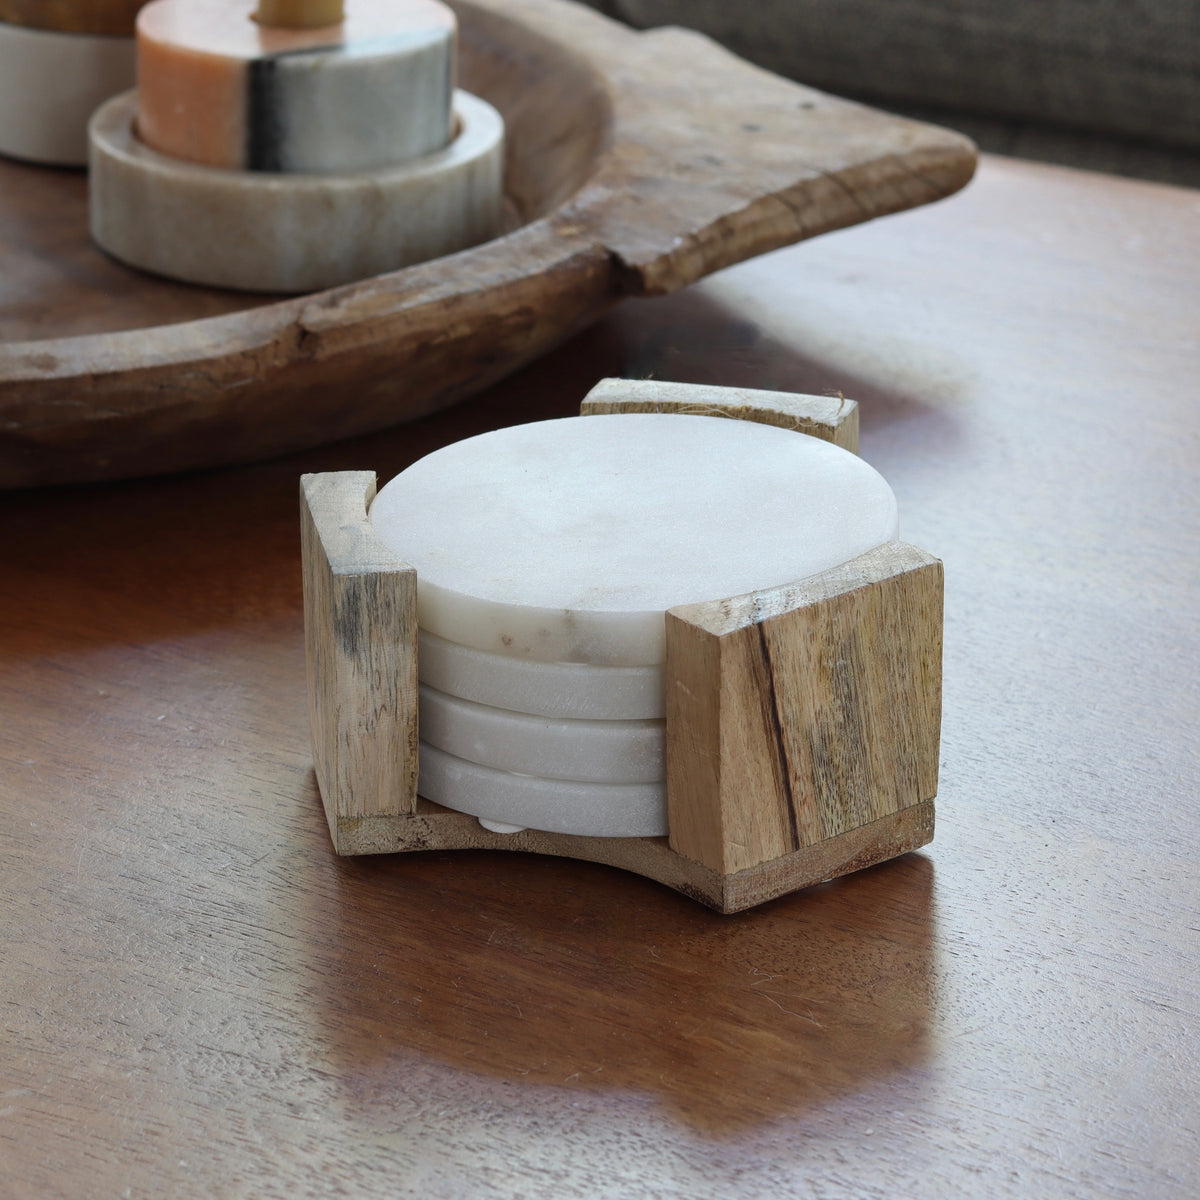 Italian Marble Coasters With Wood Holder - Holistic Habitat 